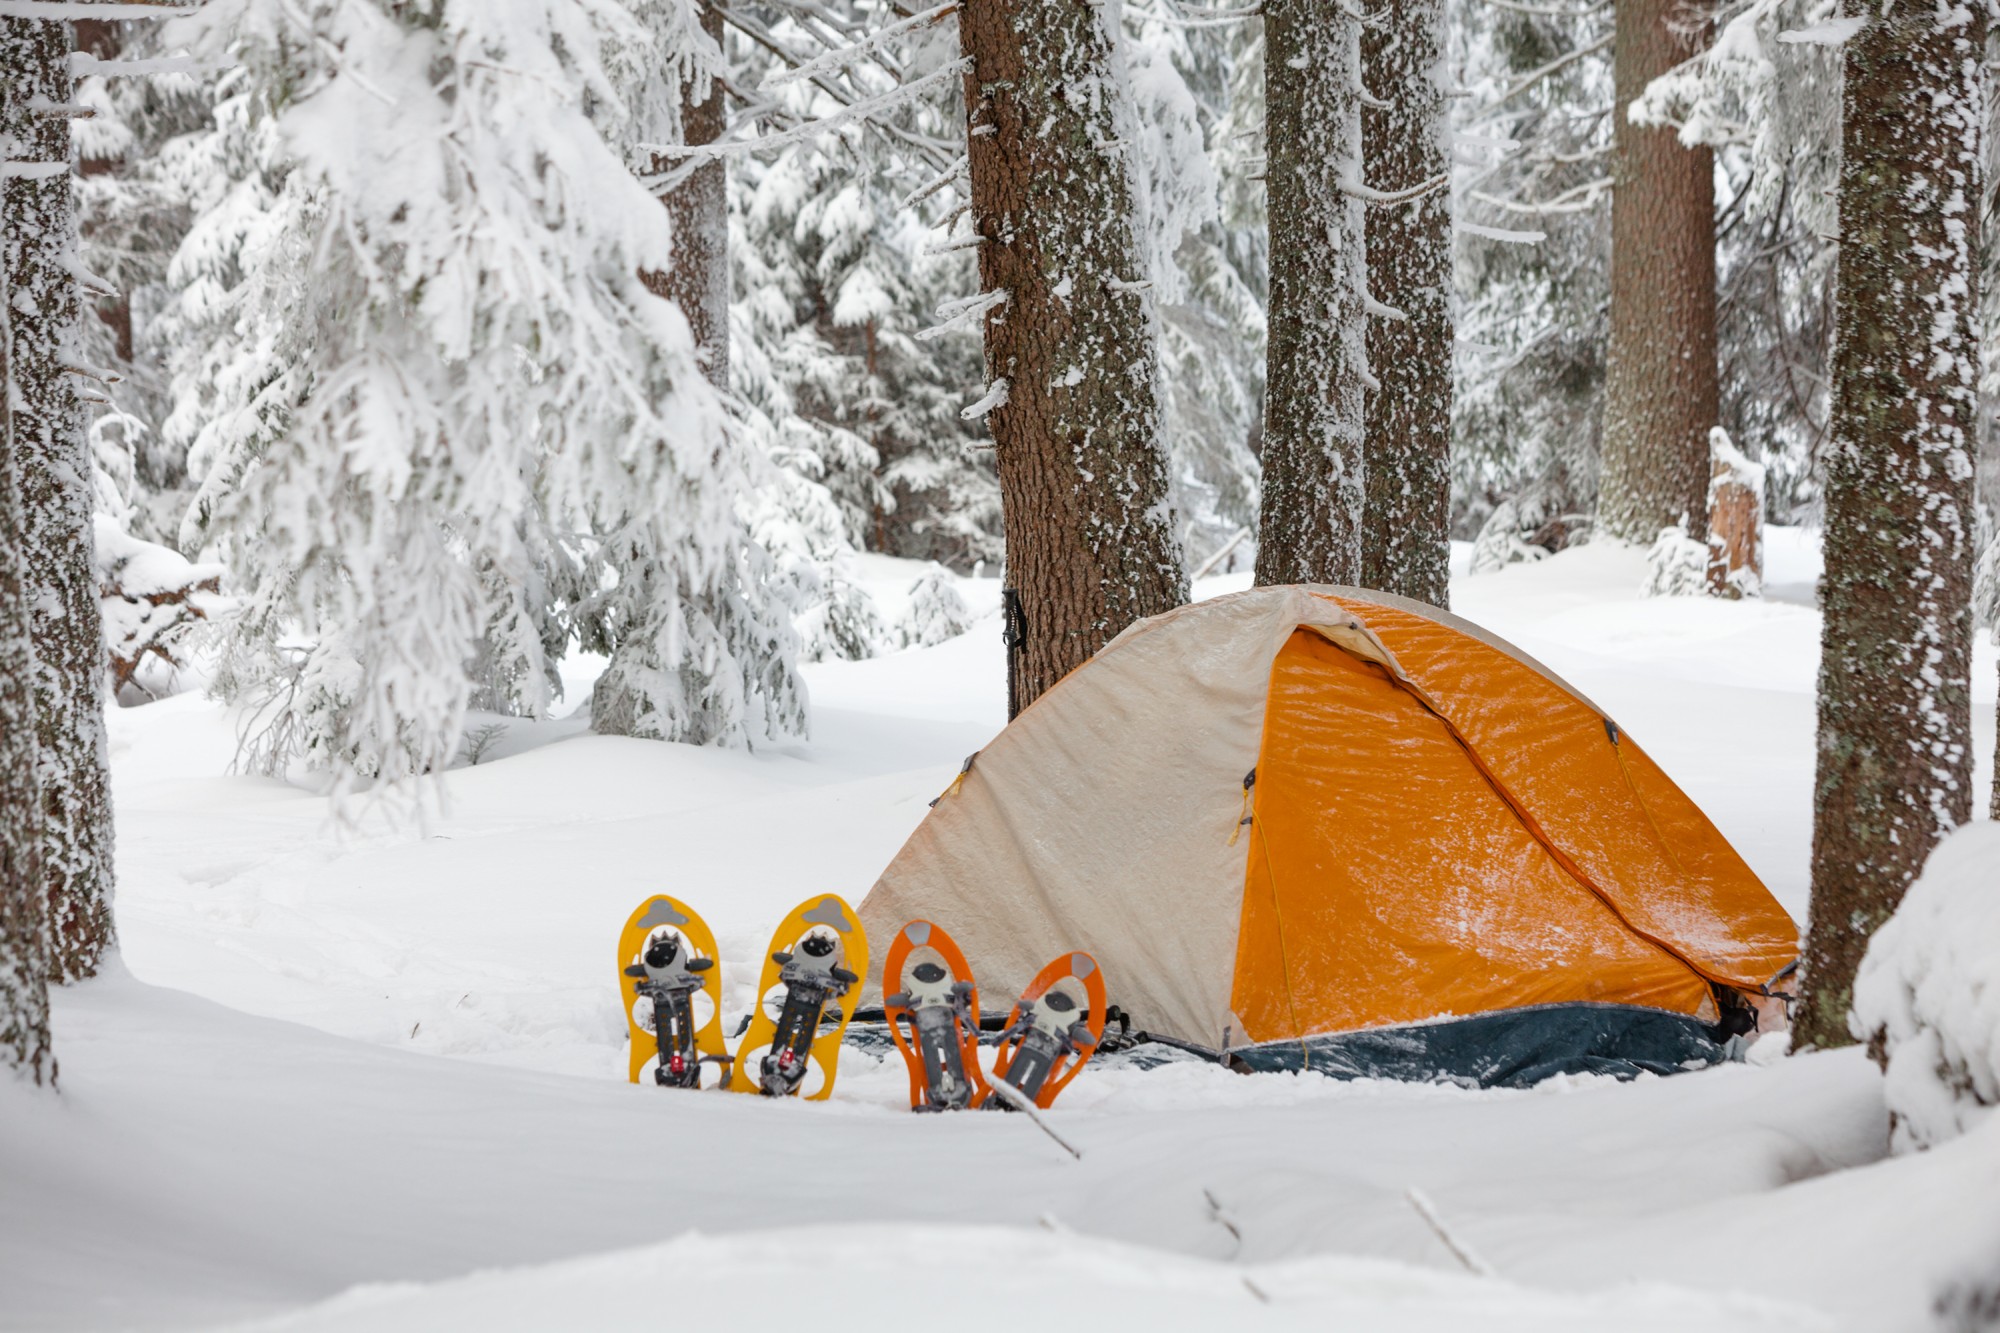 https://www.snowshoemag.com/wp-content/blogs.dir/5/files/winter-camping-tent-snow-shutterstock_156799514.jpg